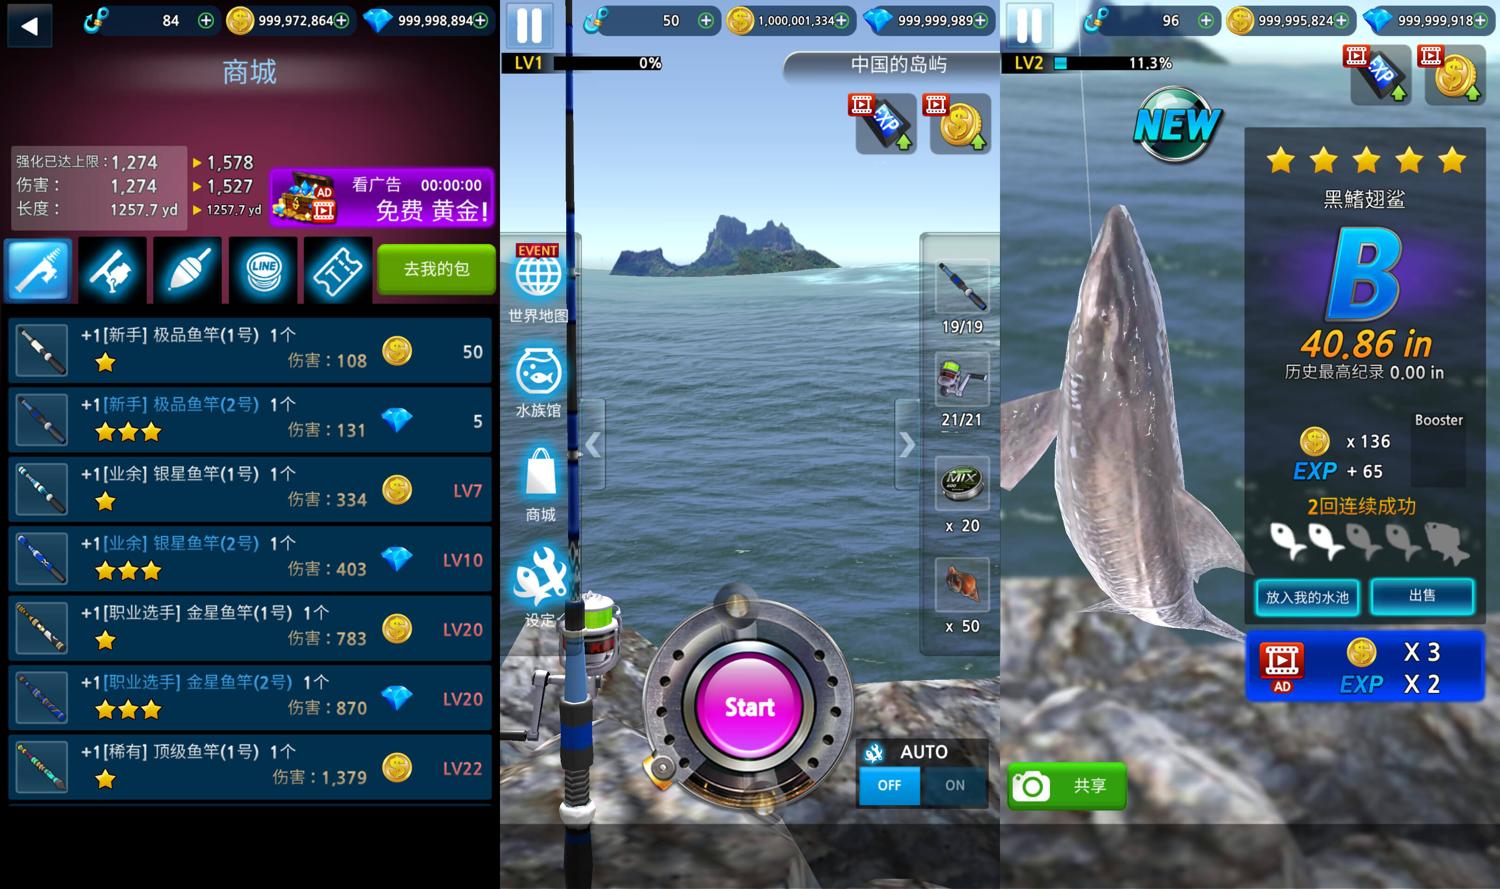 真3D海上垂钓模拟游戏 钓鱼达人 图片